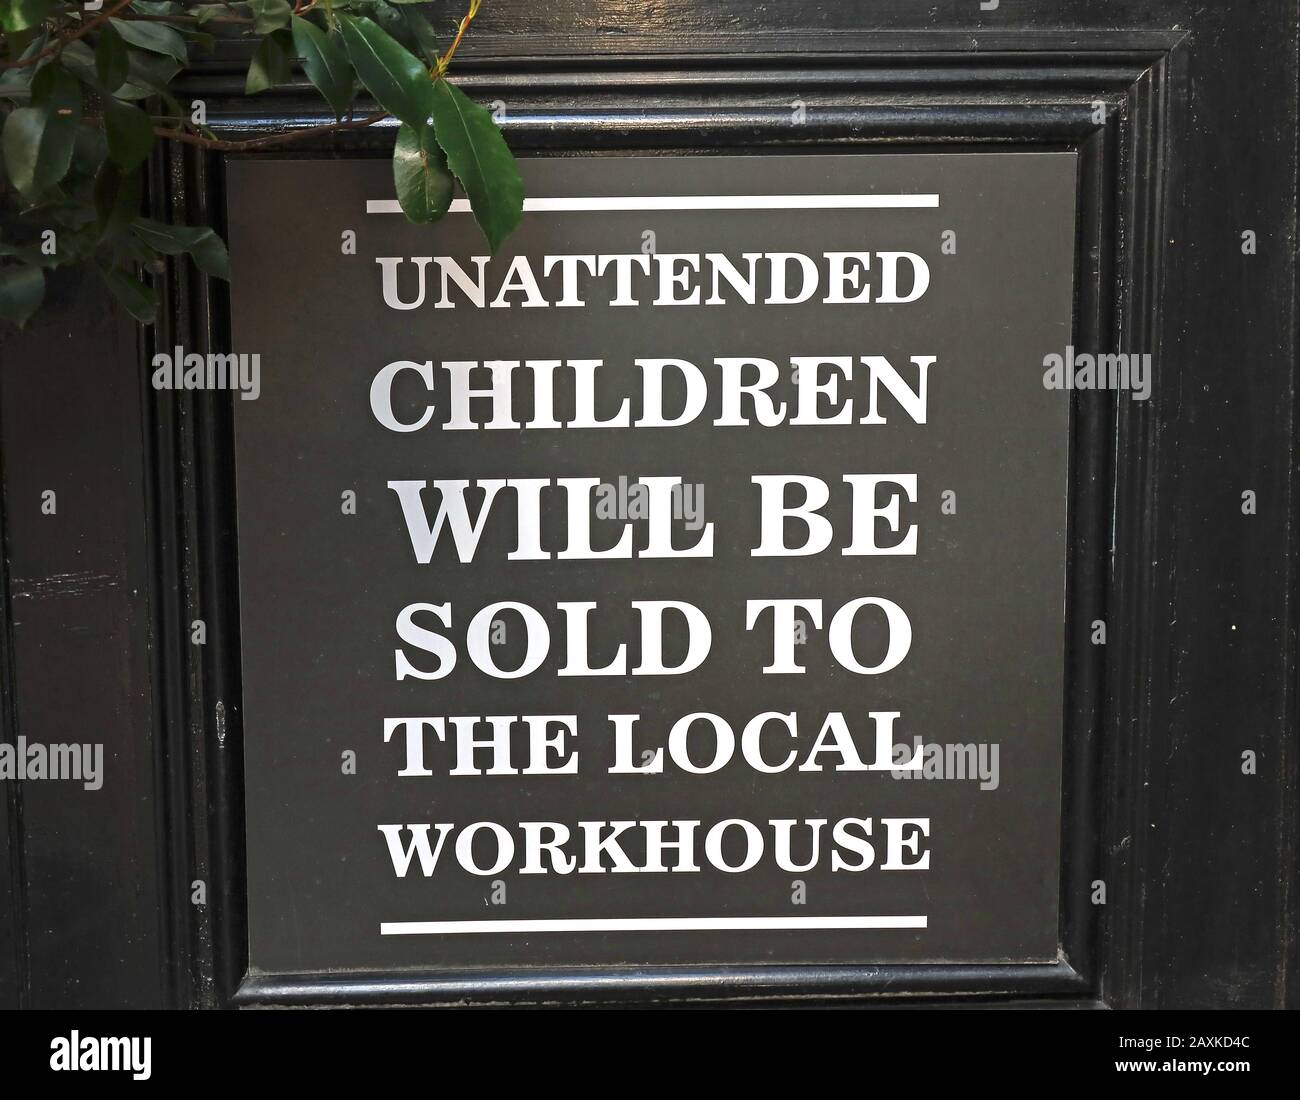 Signe, enfants sans surveillance, sera vendu, à la maison de travail locale, signe de pub victorien Banque D'Images